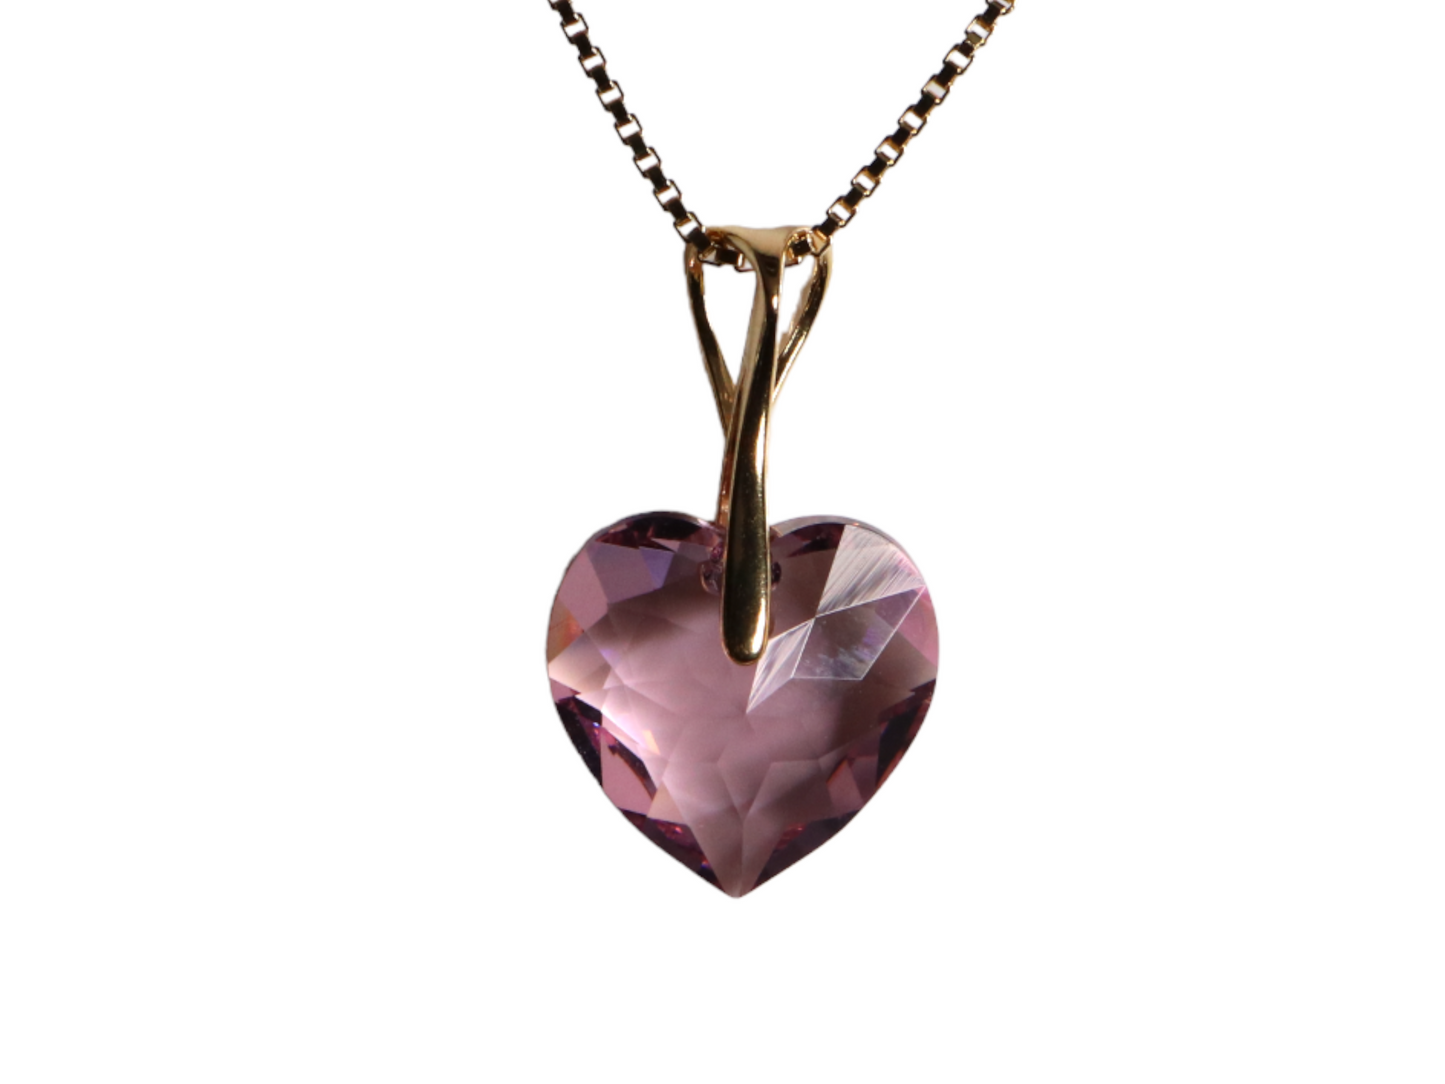 Collier avec cristaux Swarovski, mauve clair, argent, HEART